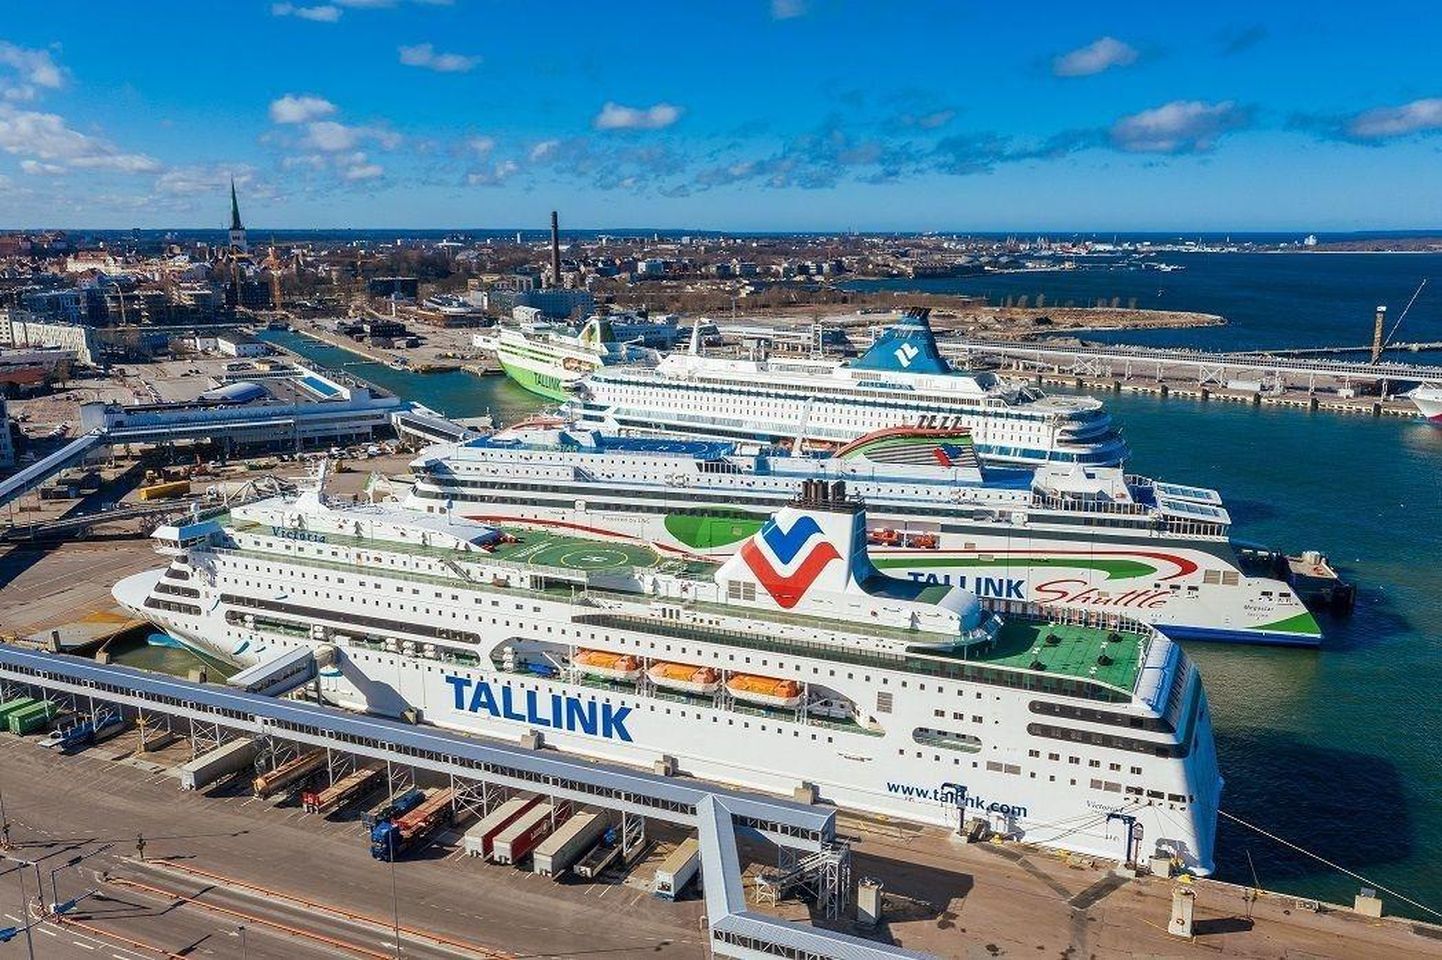 Tallinna Sadama teatel on nende tasud Stockholmi ja Helsingi sadamatega võrreldes madalamad, Tallinki hinnangul on ostujõupariteeti arvestades tasud vähemalt 20 protsenti kõrgemad. 